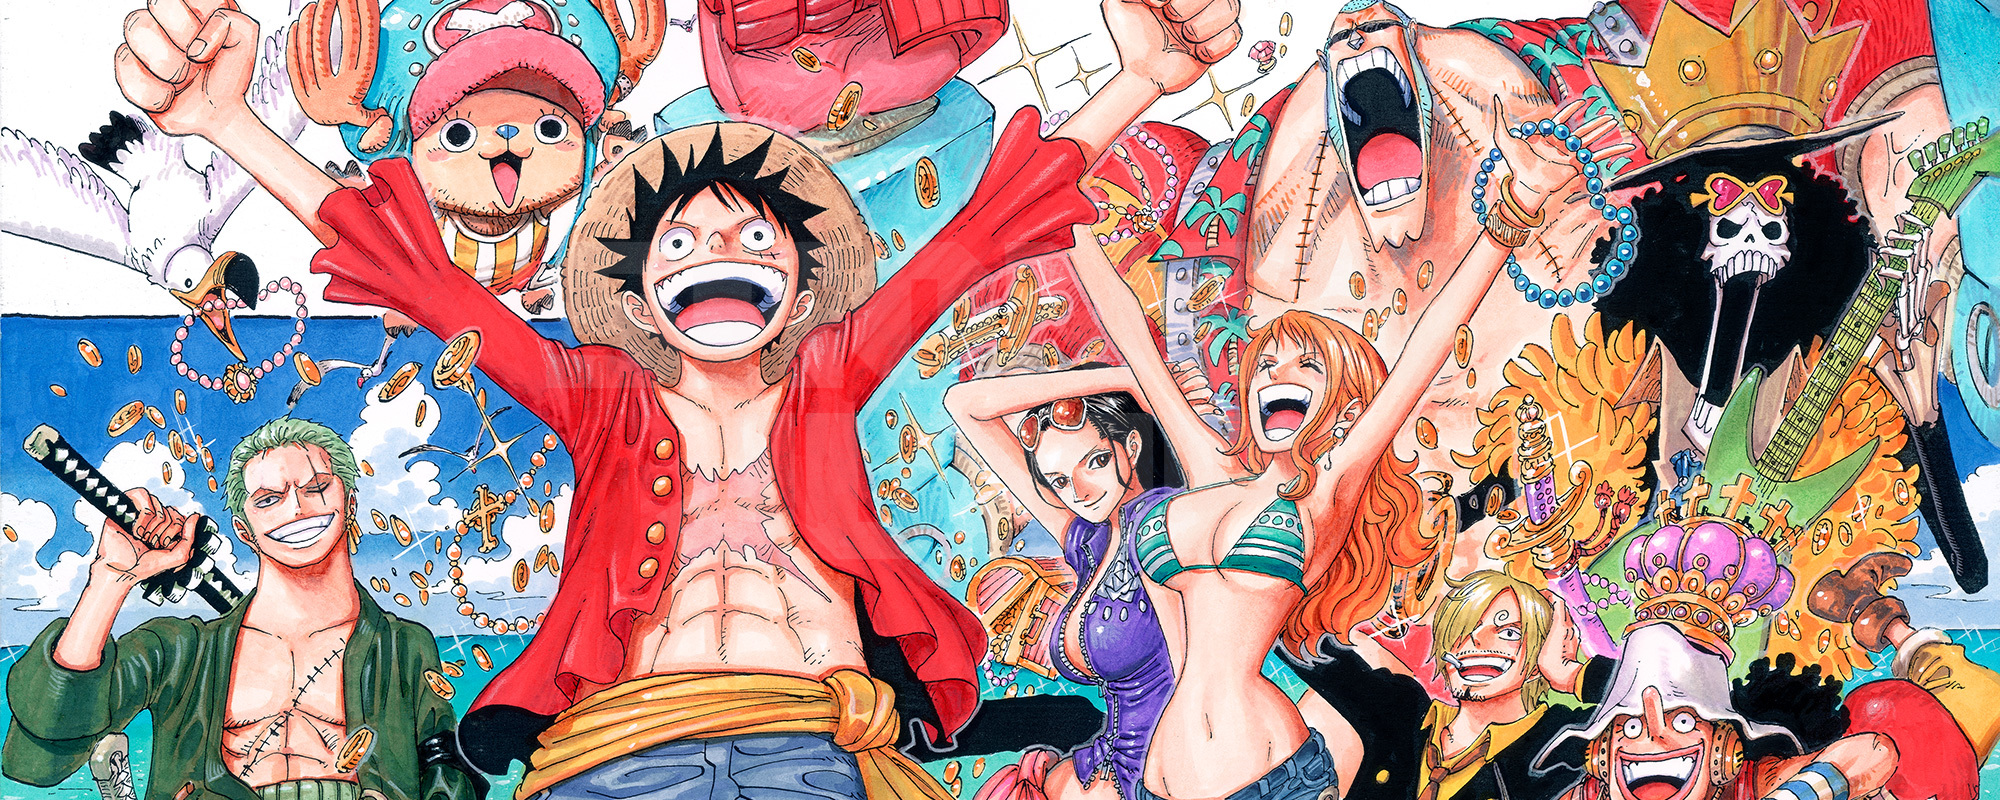 One-Piece-New-Episodes